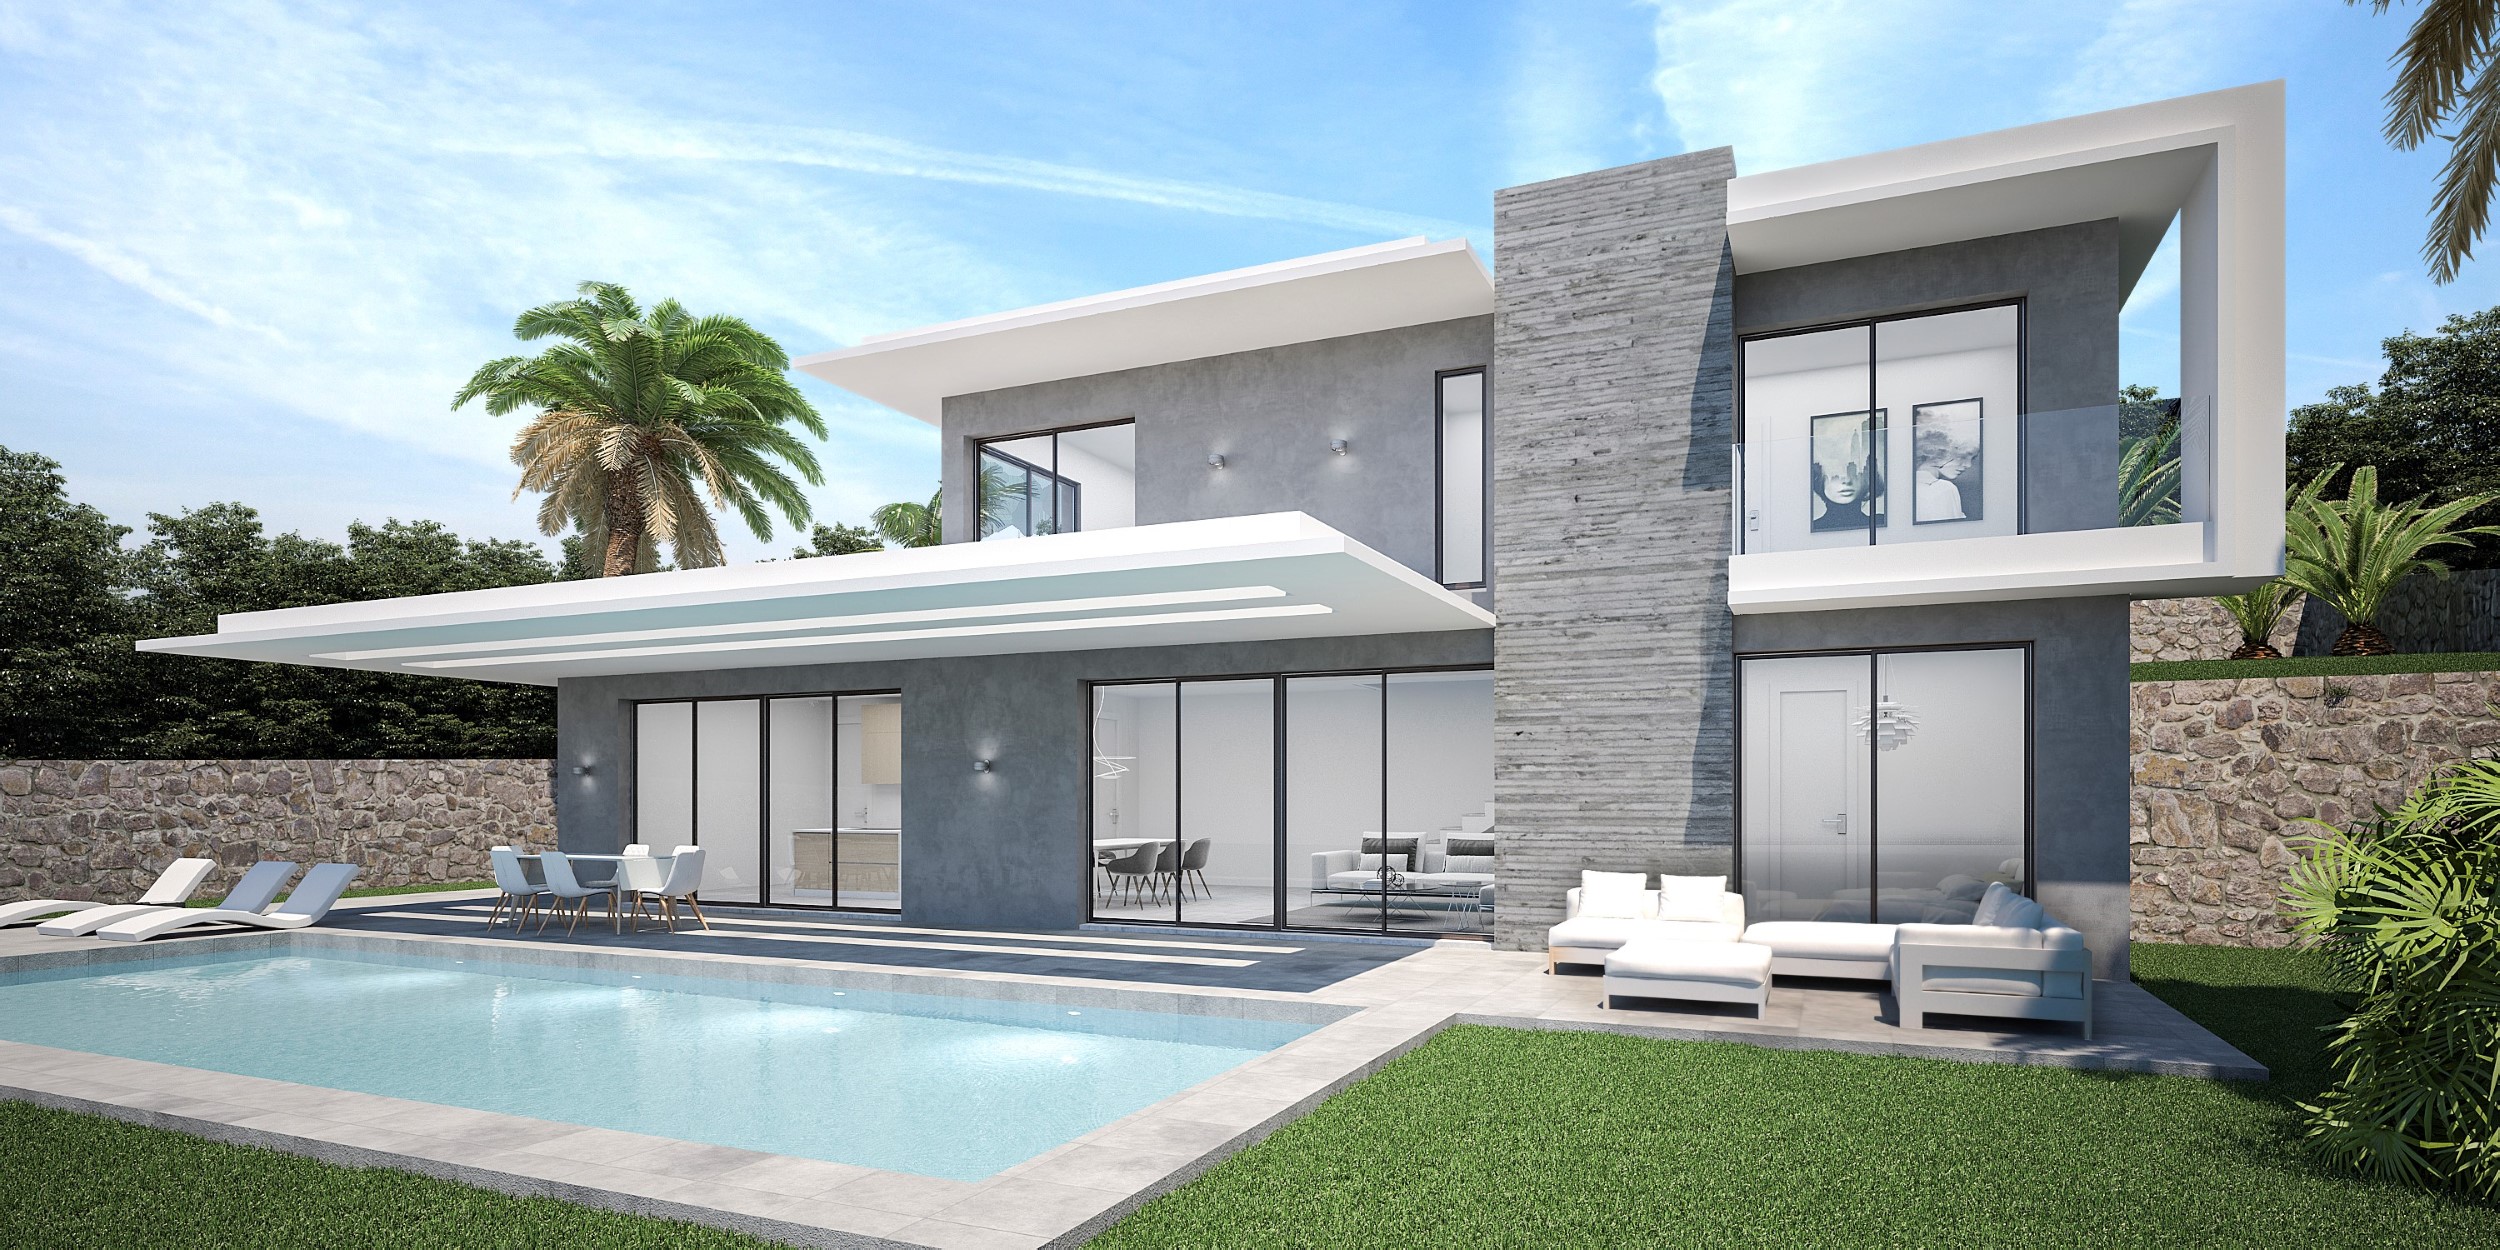 New to build 3 bedroom villa in Javea